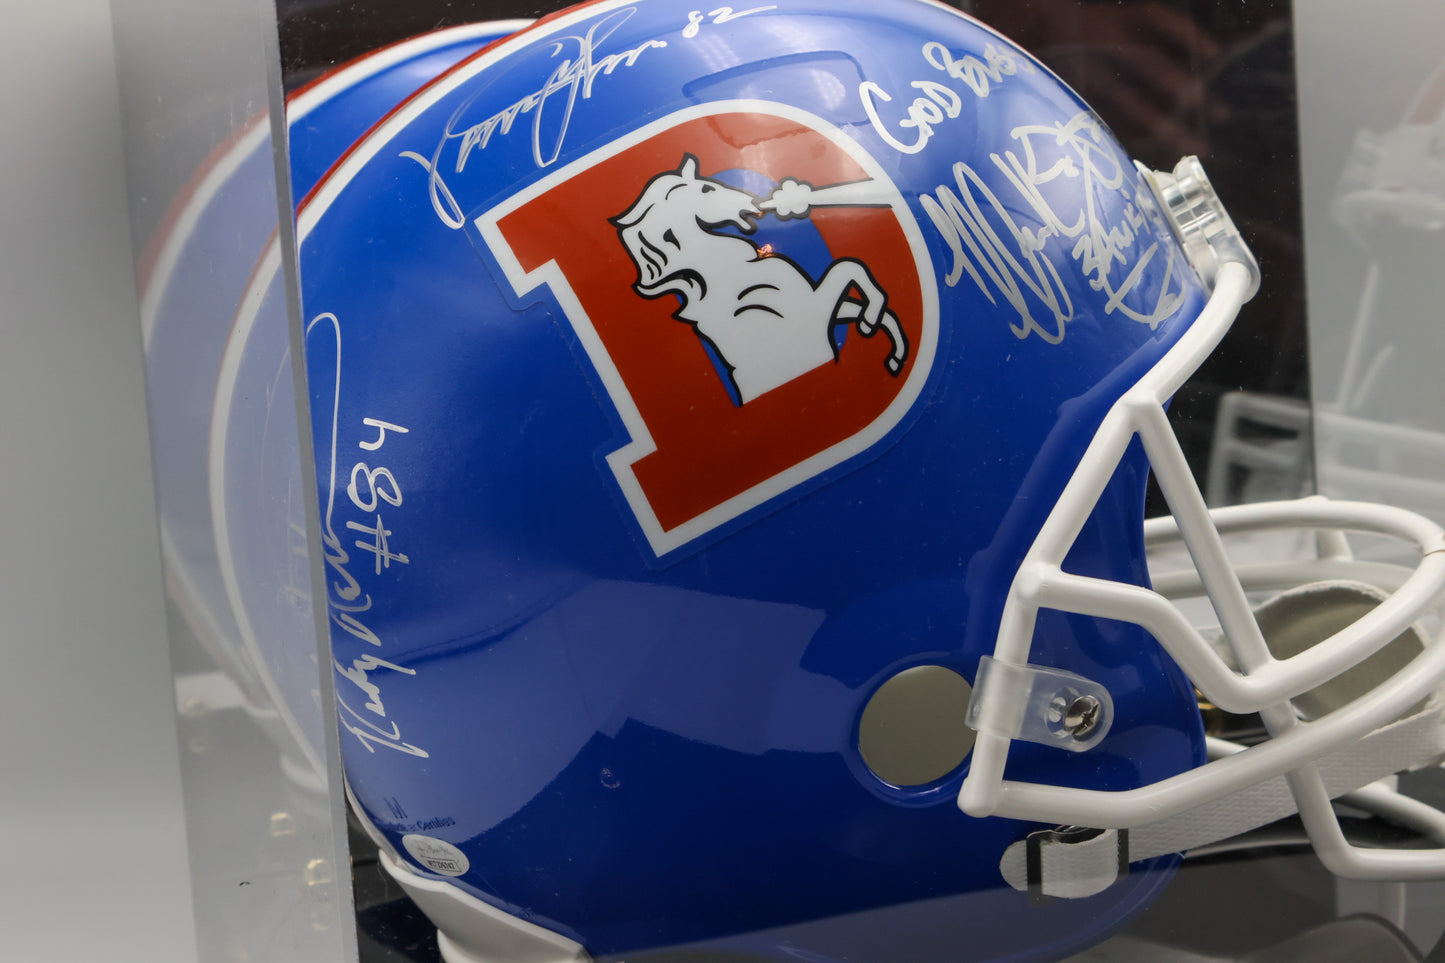 Three Amigos Denver Broncos Autographed Replica Helmet With Display Case